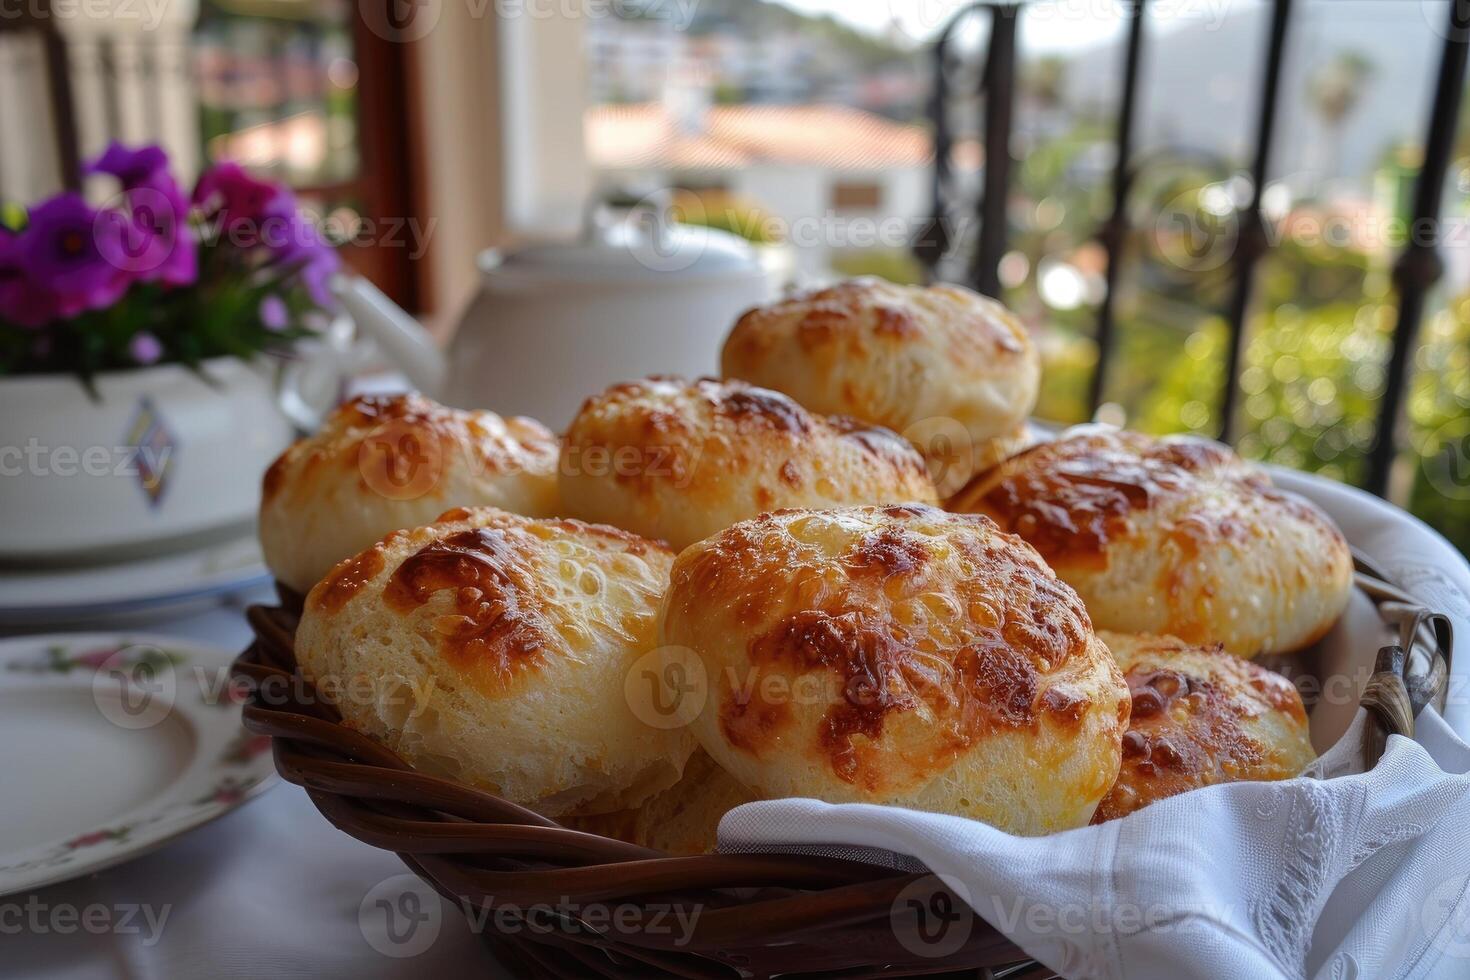 pao de queijo braziliaans kaas brood in de keuken tafel professioneel reclame voedsel fotografie foto